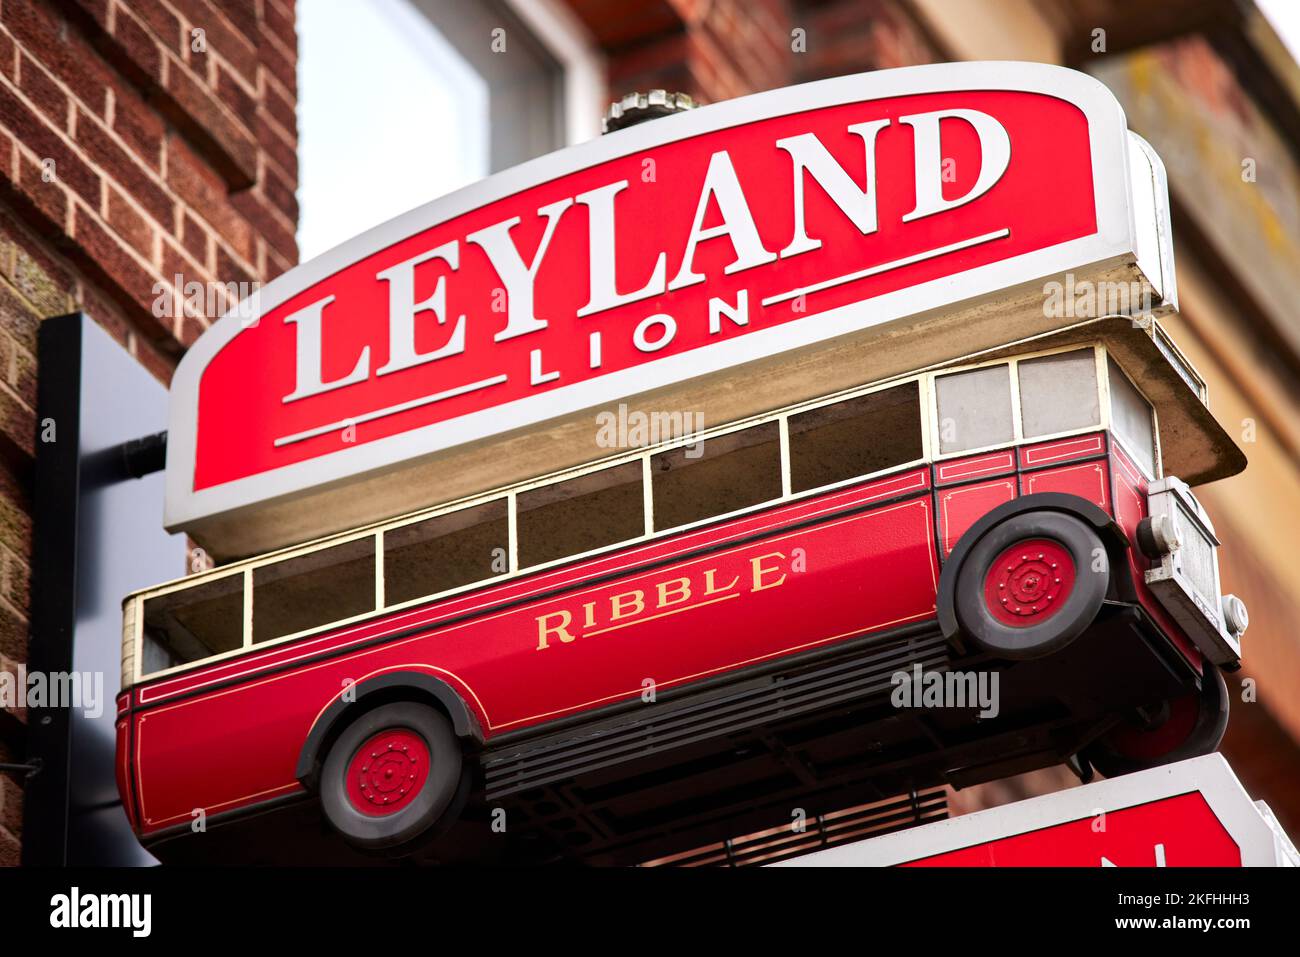 Ville de Leyland dans le sud du Ribble et comté du Lancashire, Angleterre. Leyland Lion pub a été nommé d'après le bus fait dans la ville Banque D'Images